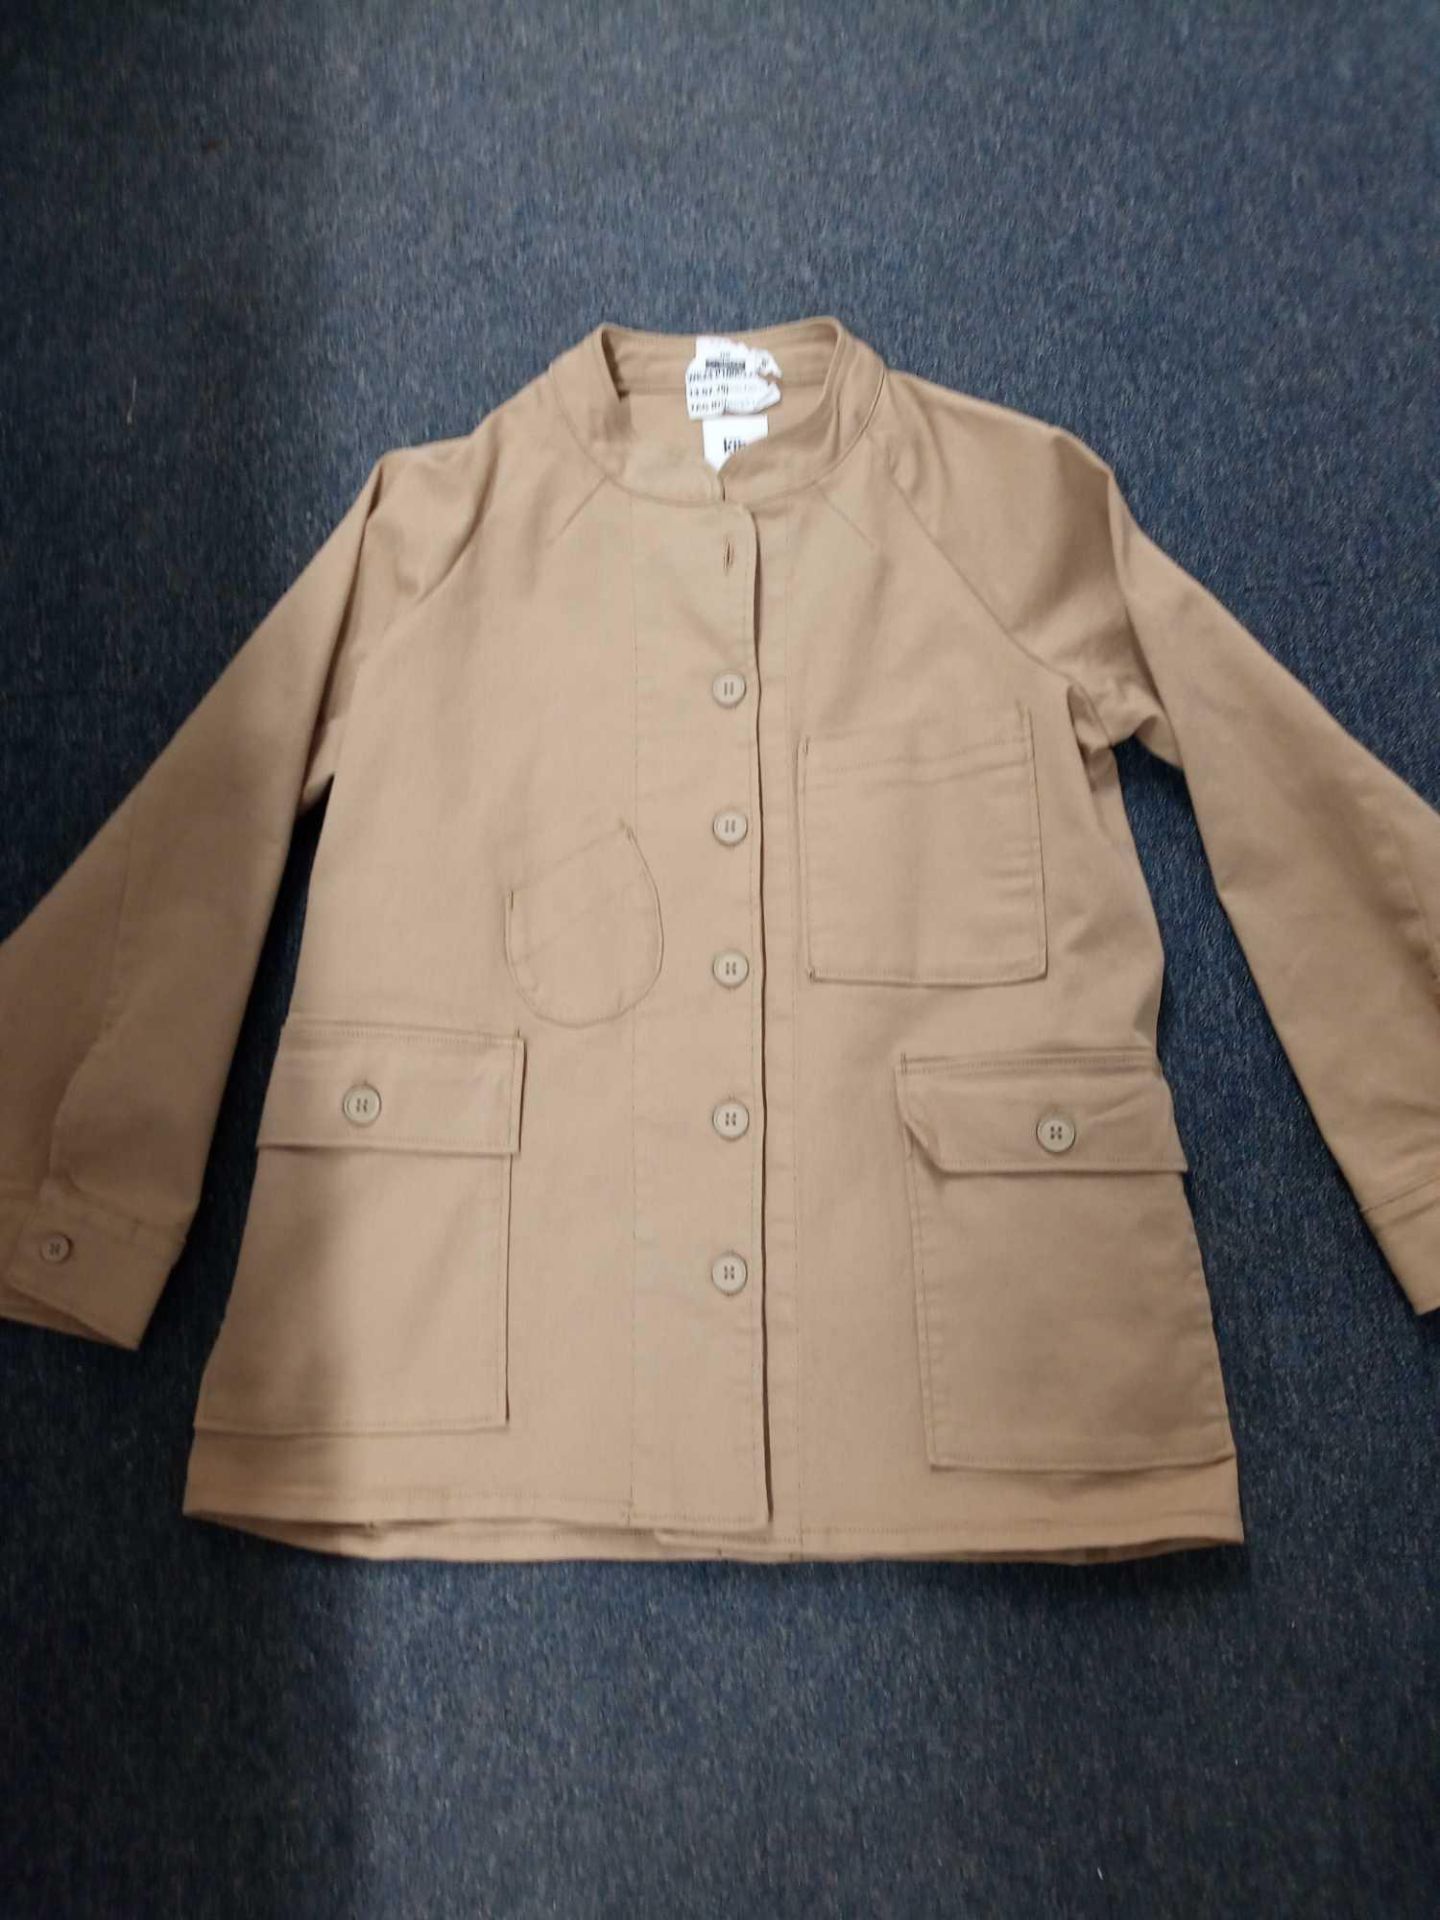 RRP £100 John Lewis KIN Beige Cord Jacket Size 10 (1011886)